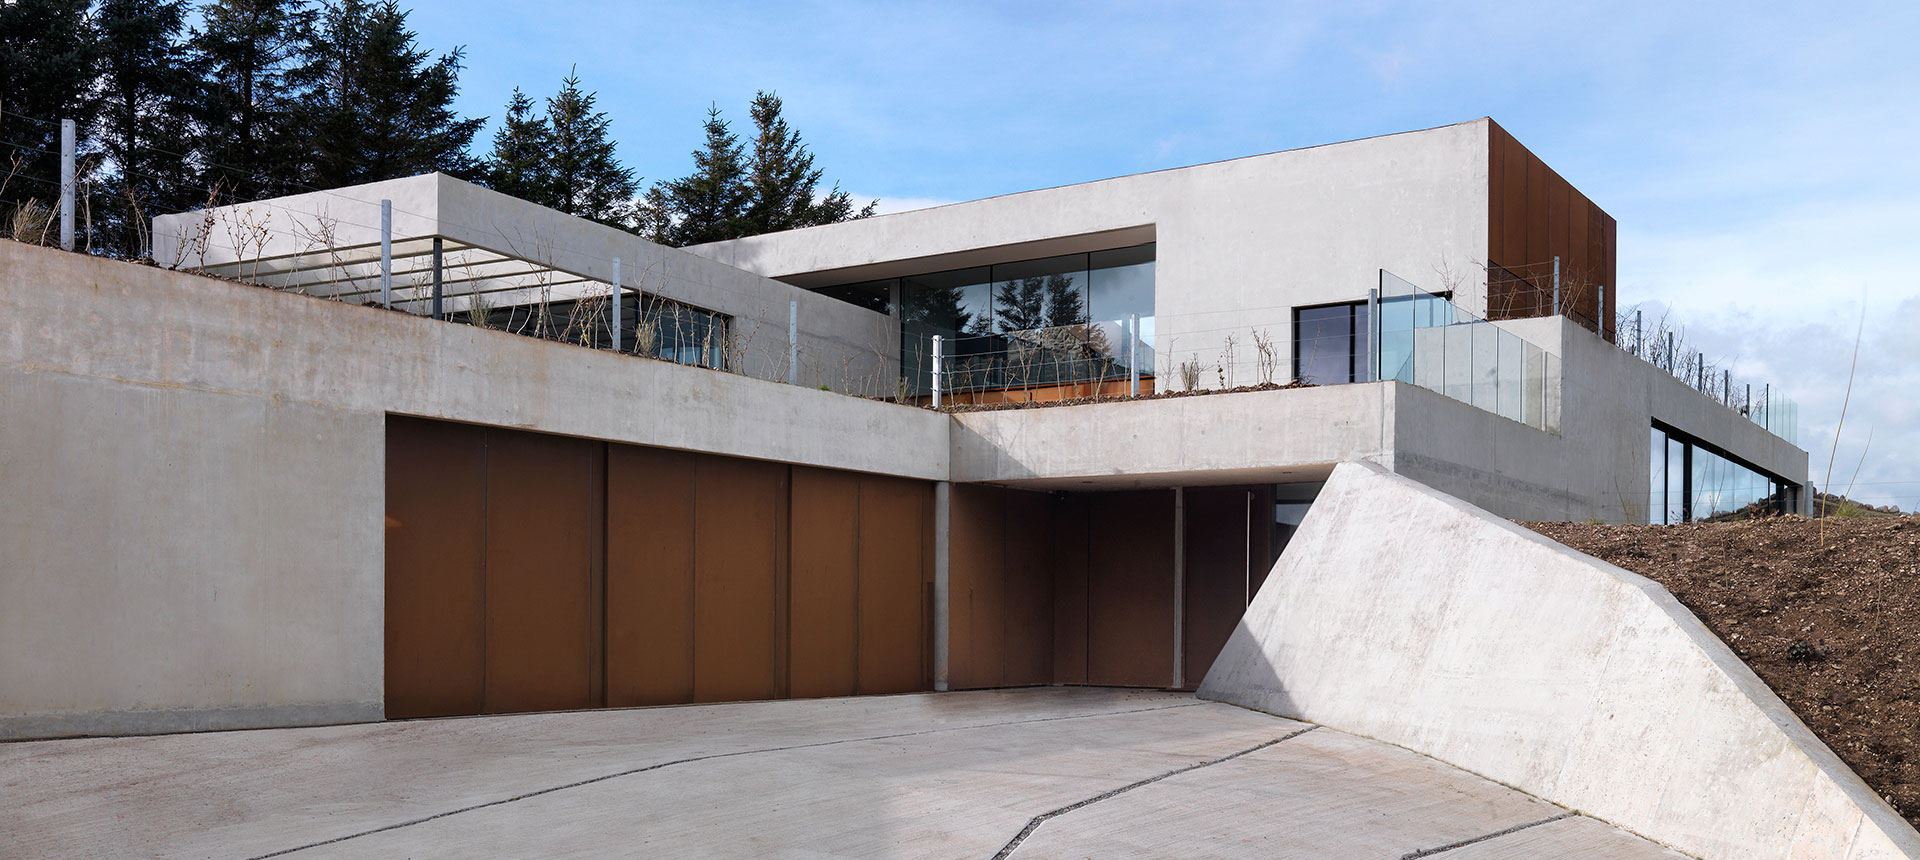 Ein modernes Wohnhaus mit geometrischem Design, das Beton und Holz kombiniert, mit großen Fenstern und einem Flachdach, unter einem teilweise bewölkten Himmel